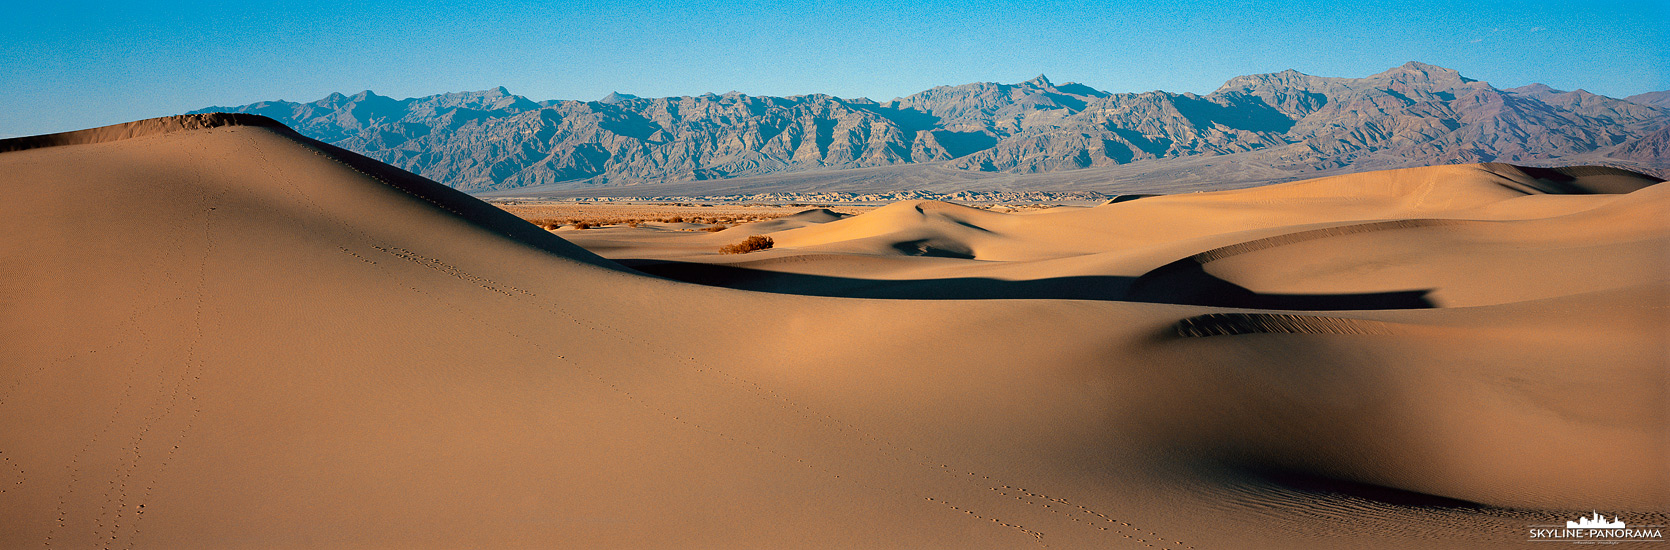 Mesquite Flats Sand Dunes Death Valley (p_01254)